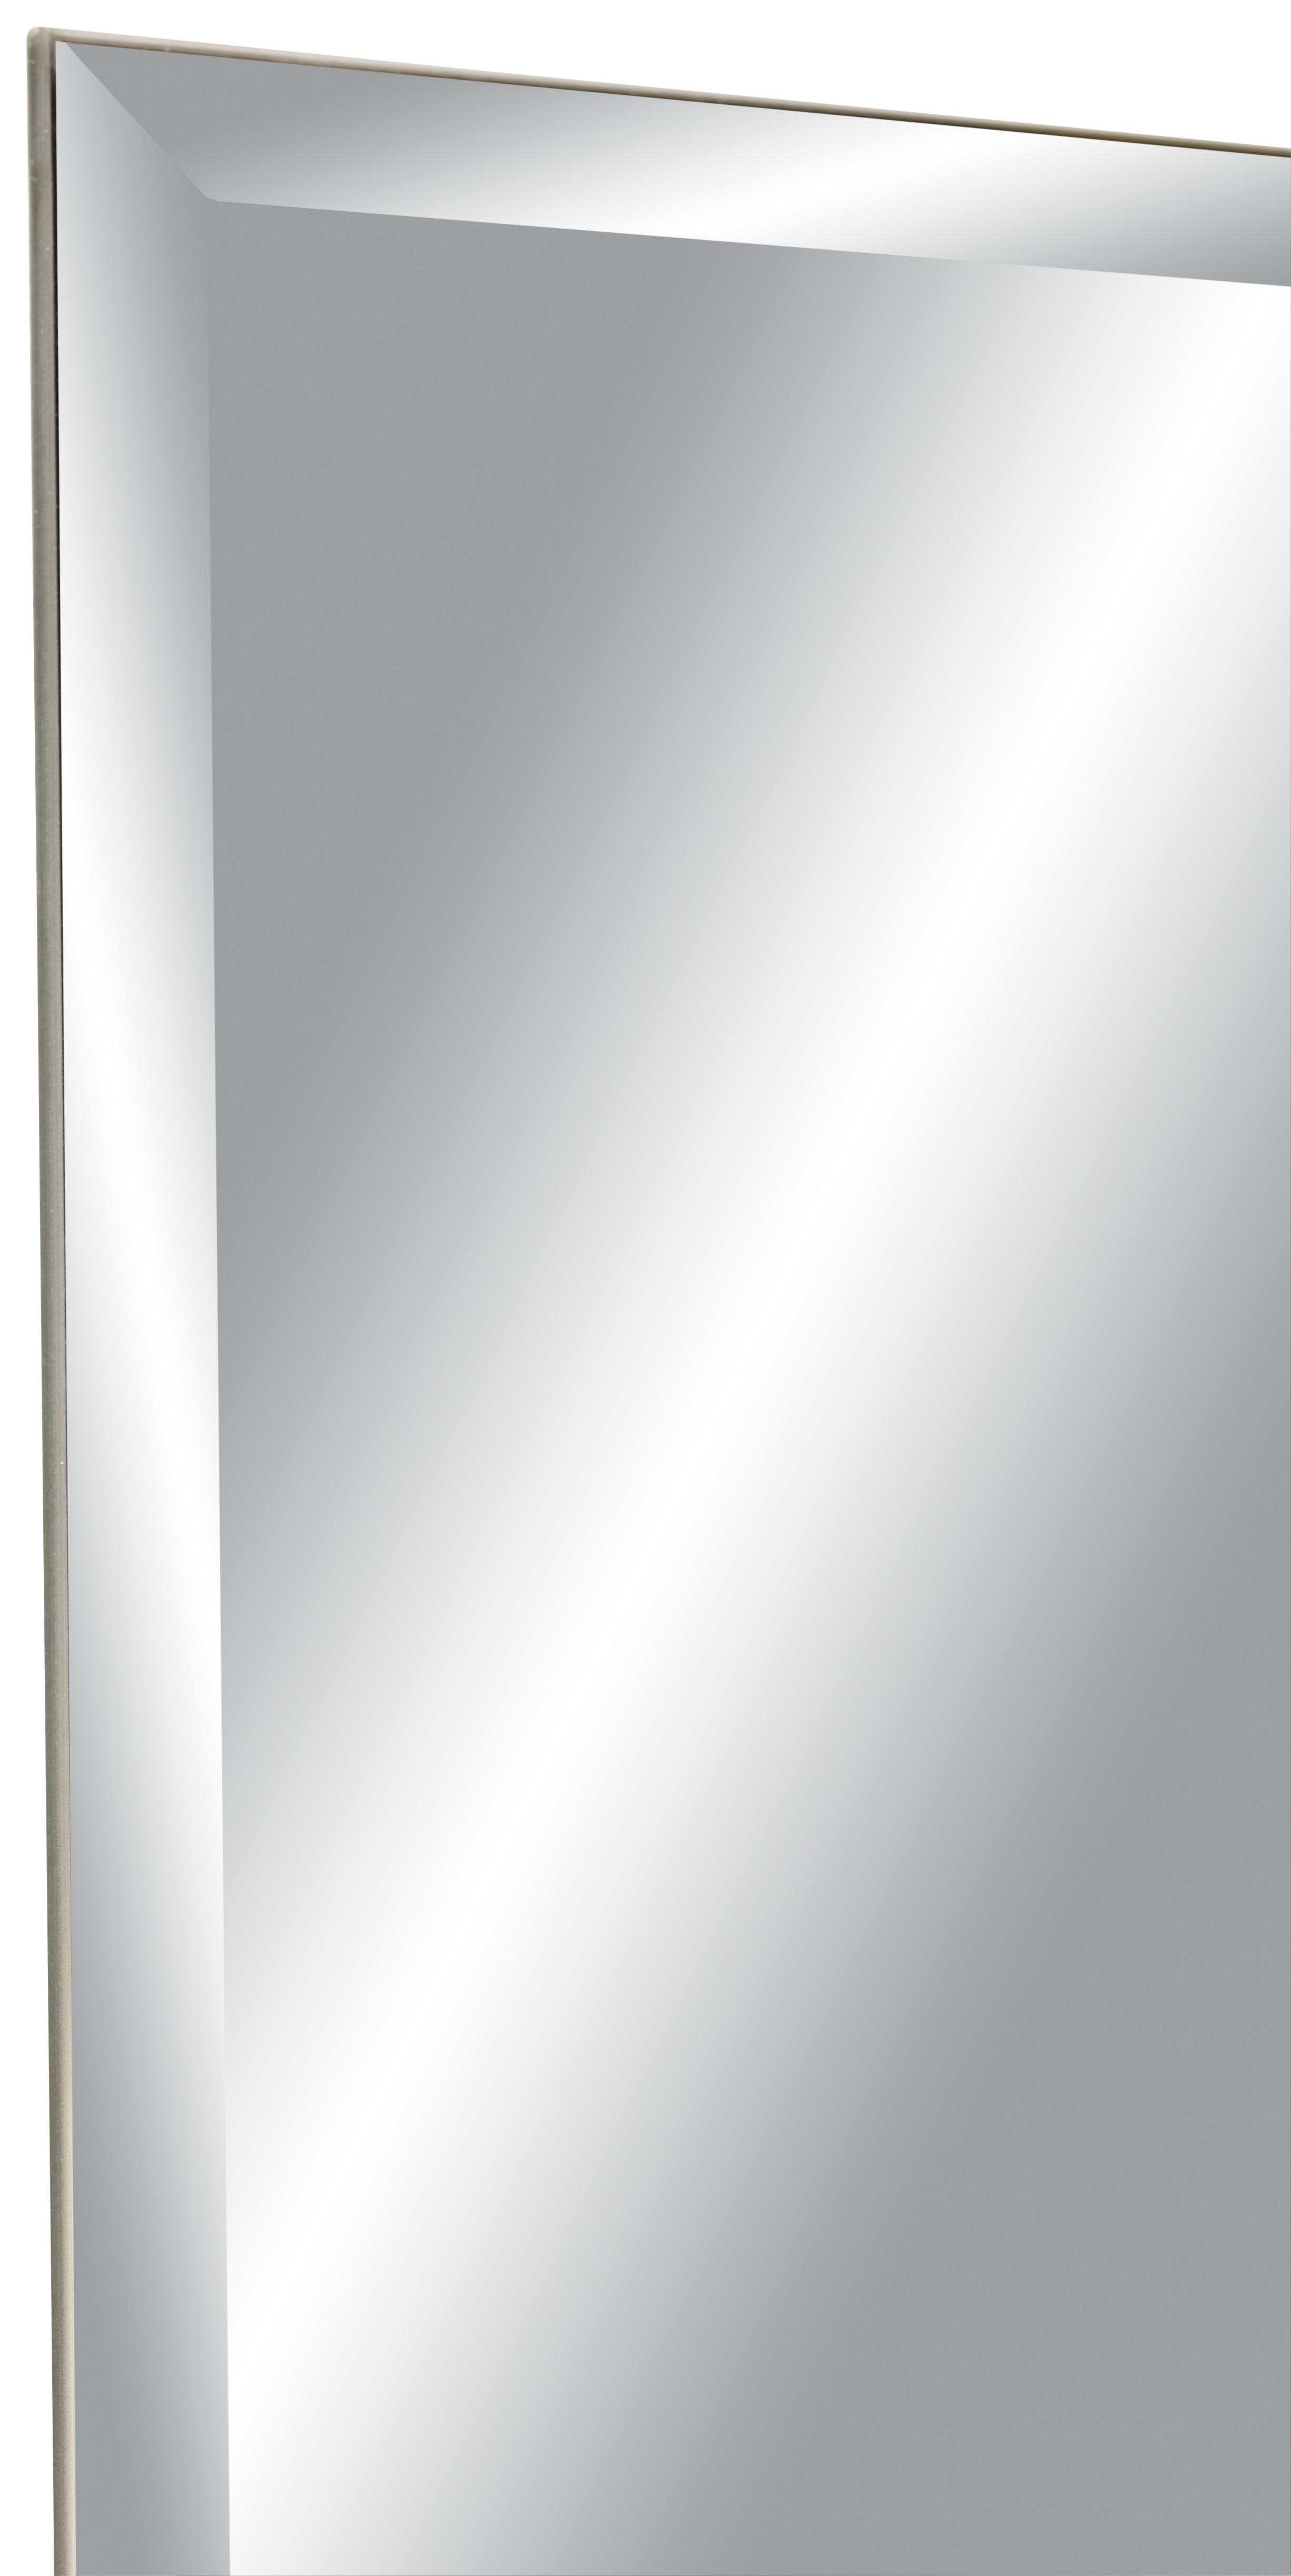 Stensko Ogledalo Messina - srebrna, steklo (60/160cm) - Modern Living